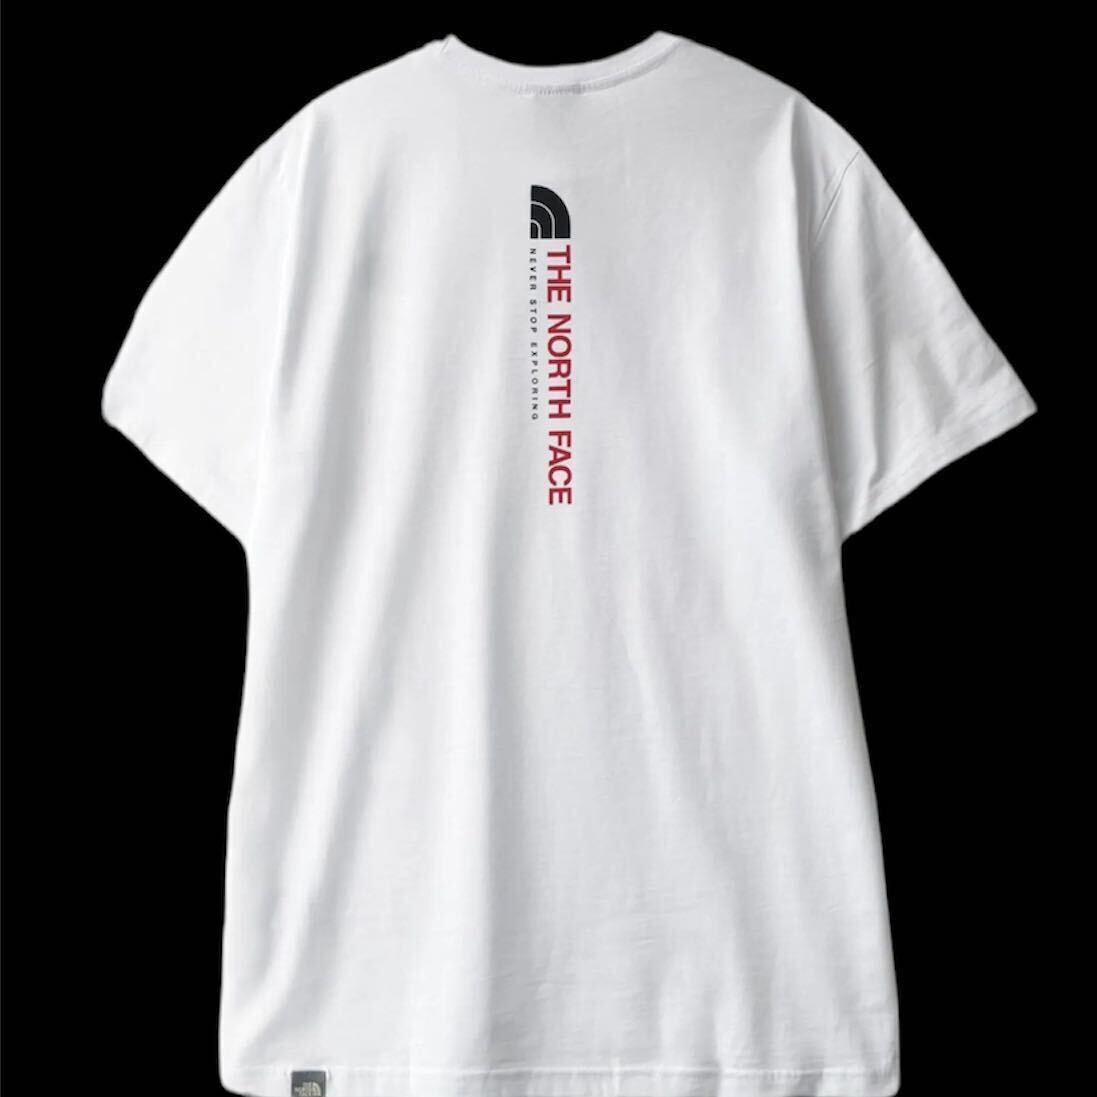 THE NORTH FACE ザ ノースフェイス メンズ 半袖 Tシャツ バッグデザイン 海外限定 正規品 完売品 ホワイト 白 L XL コットン クールネック_画像5